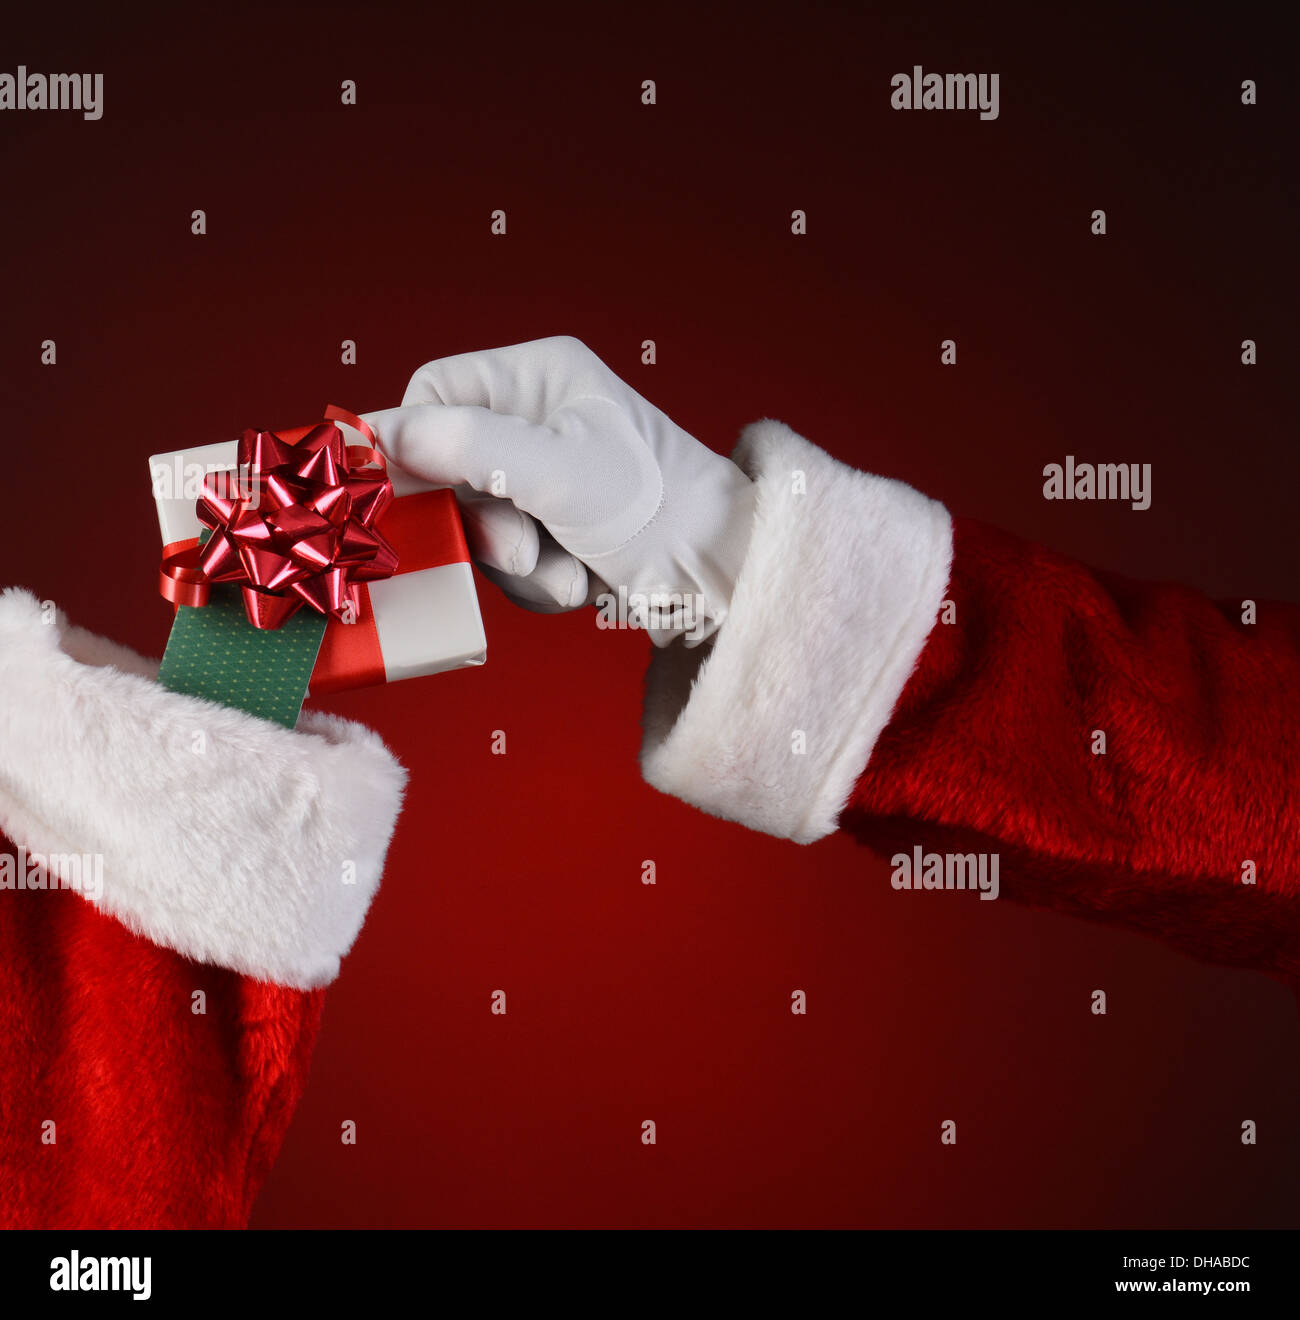 Nahaufnahme des Weihnachtsmanns platzieren eine kleine eingewickelt in einen Urlaub Strumpf vorhanden. Stockfoto